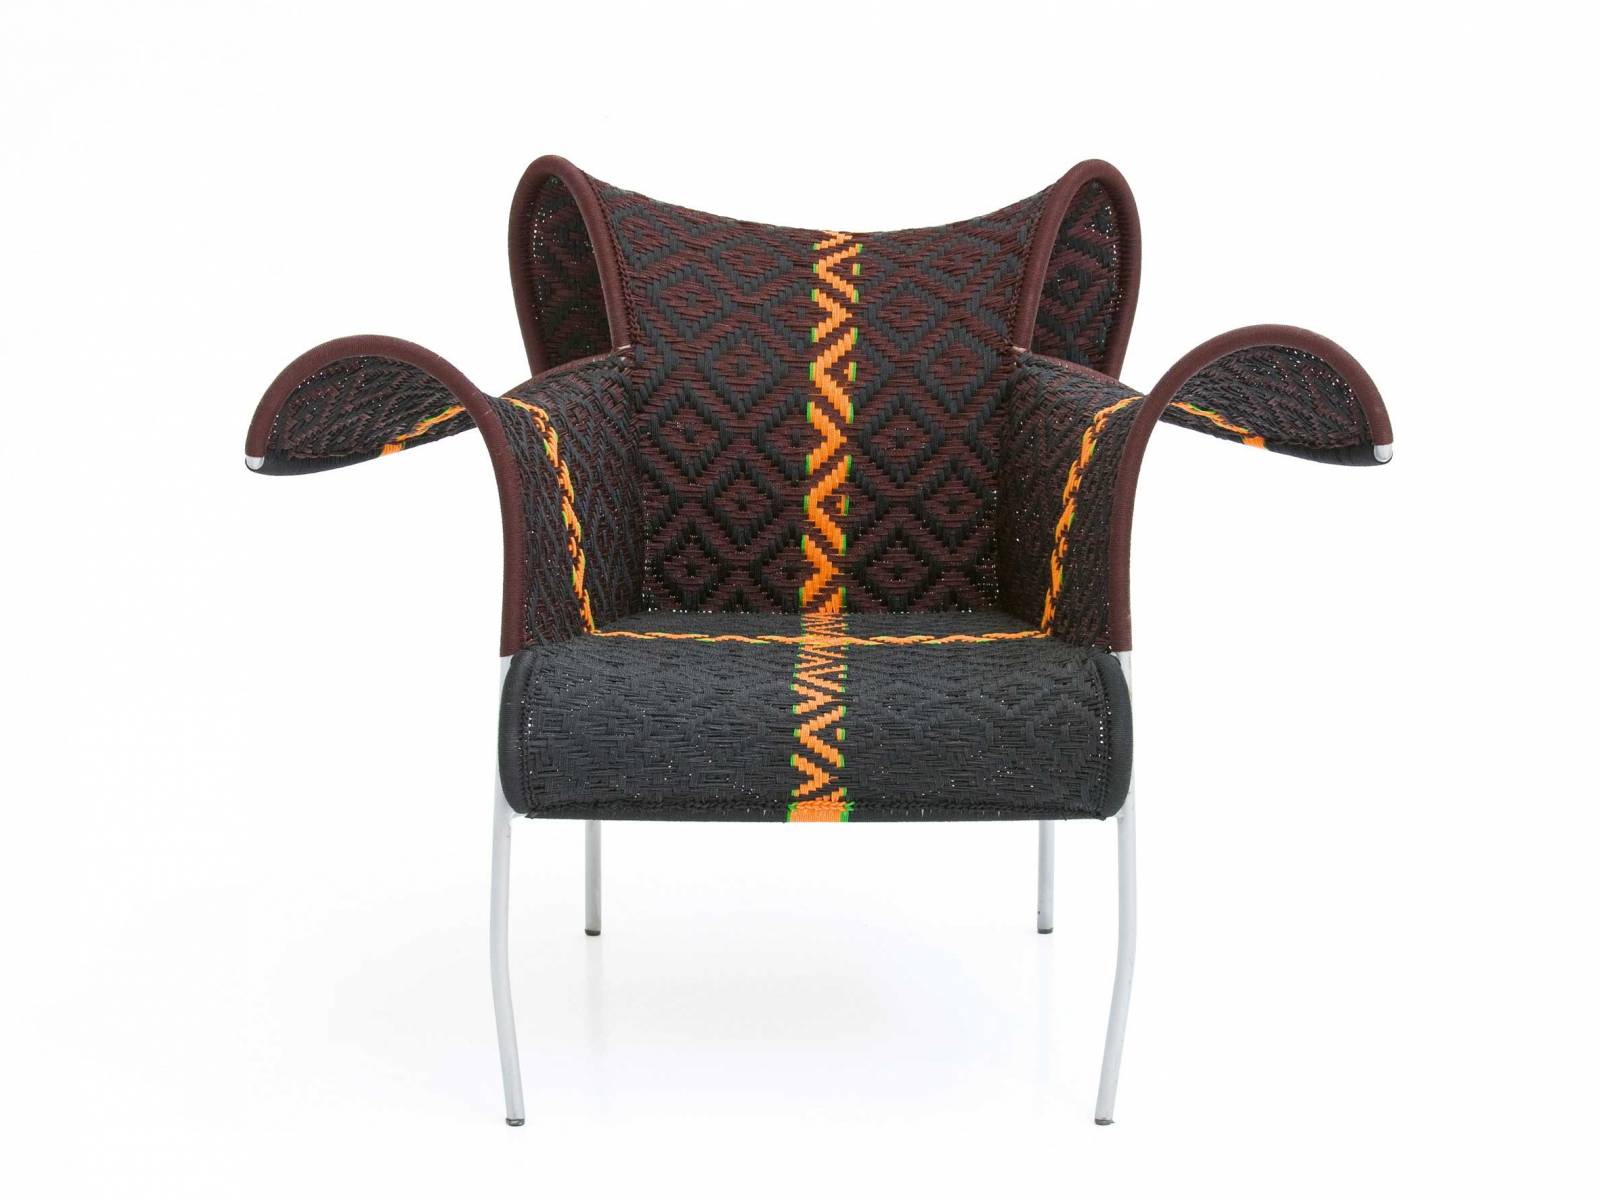 Für «M'Afrique» durften seit 2009 schon einige DesinerInnen einen Entwurf beisteuern. Der Stuhl «Ibiscus» stammt von Dominique Pétot und wird wie alle Stücke der Kollektion im Atelier im Senegal unter der künstlerischen Leitung von Abdou Salam Gaye hergestellt. MOROSO.